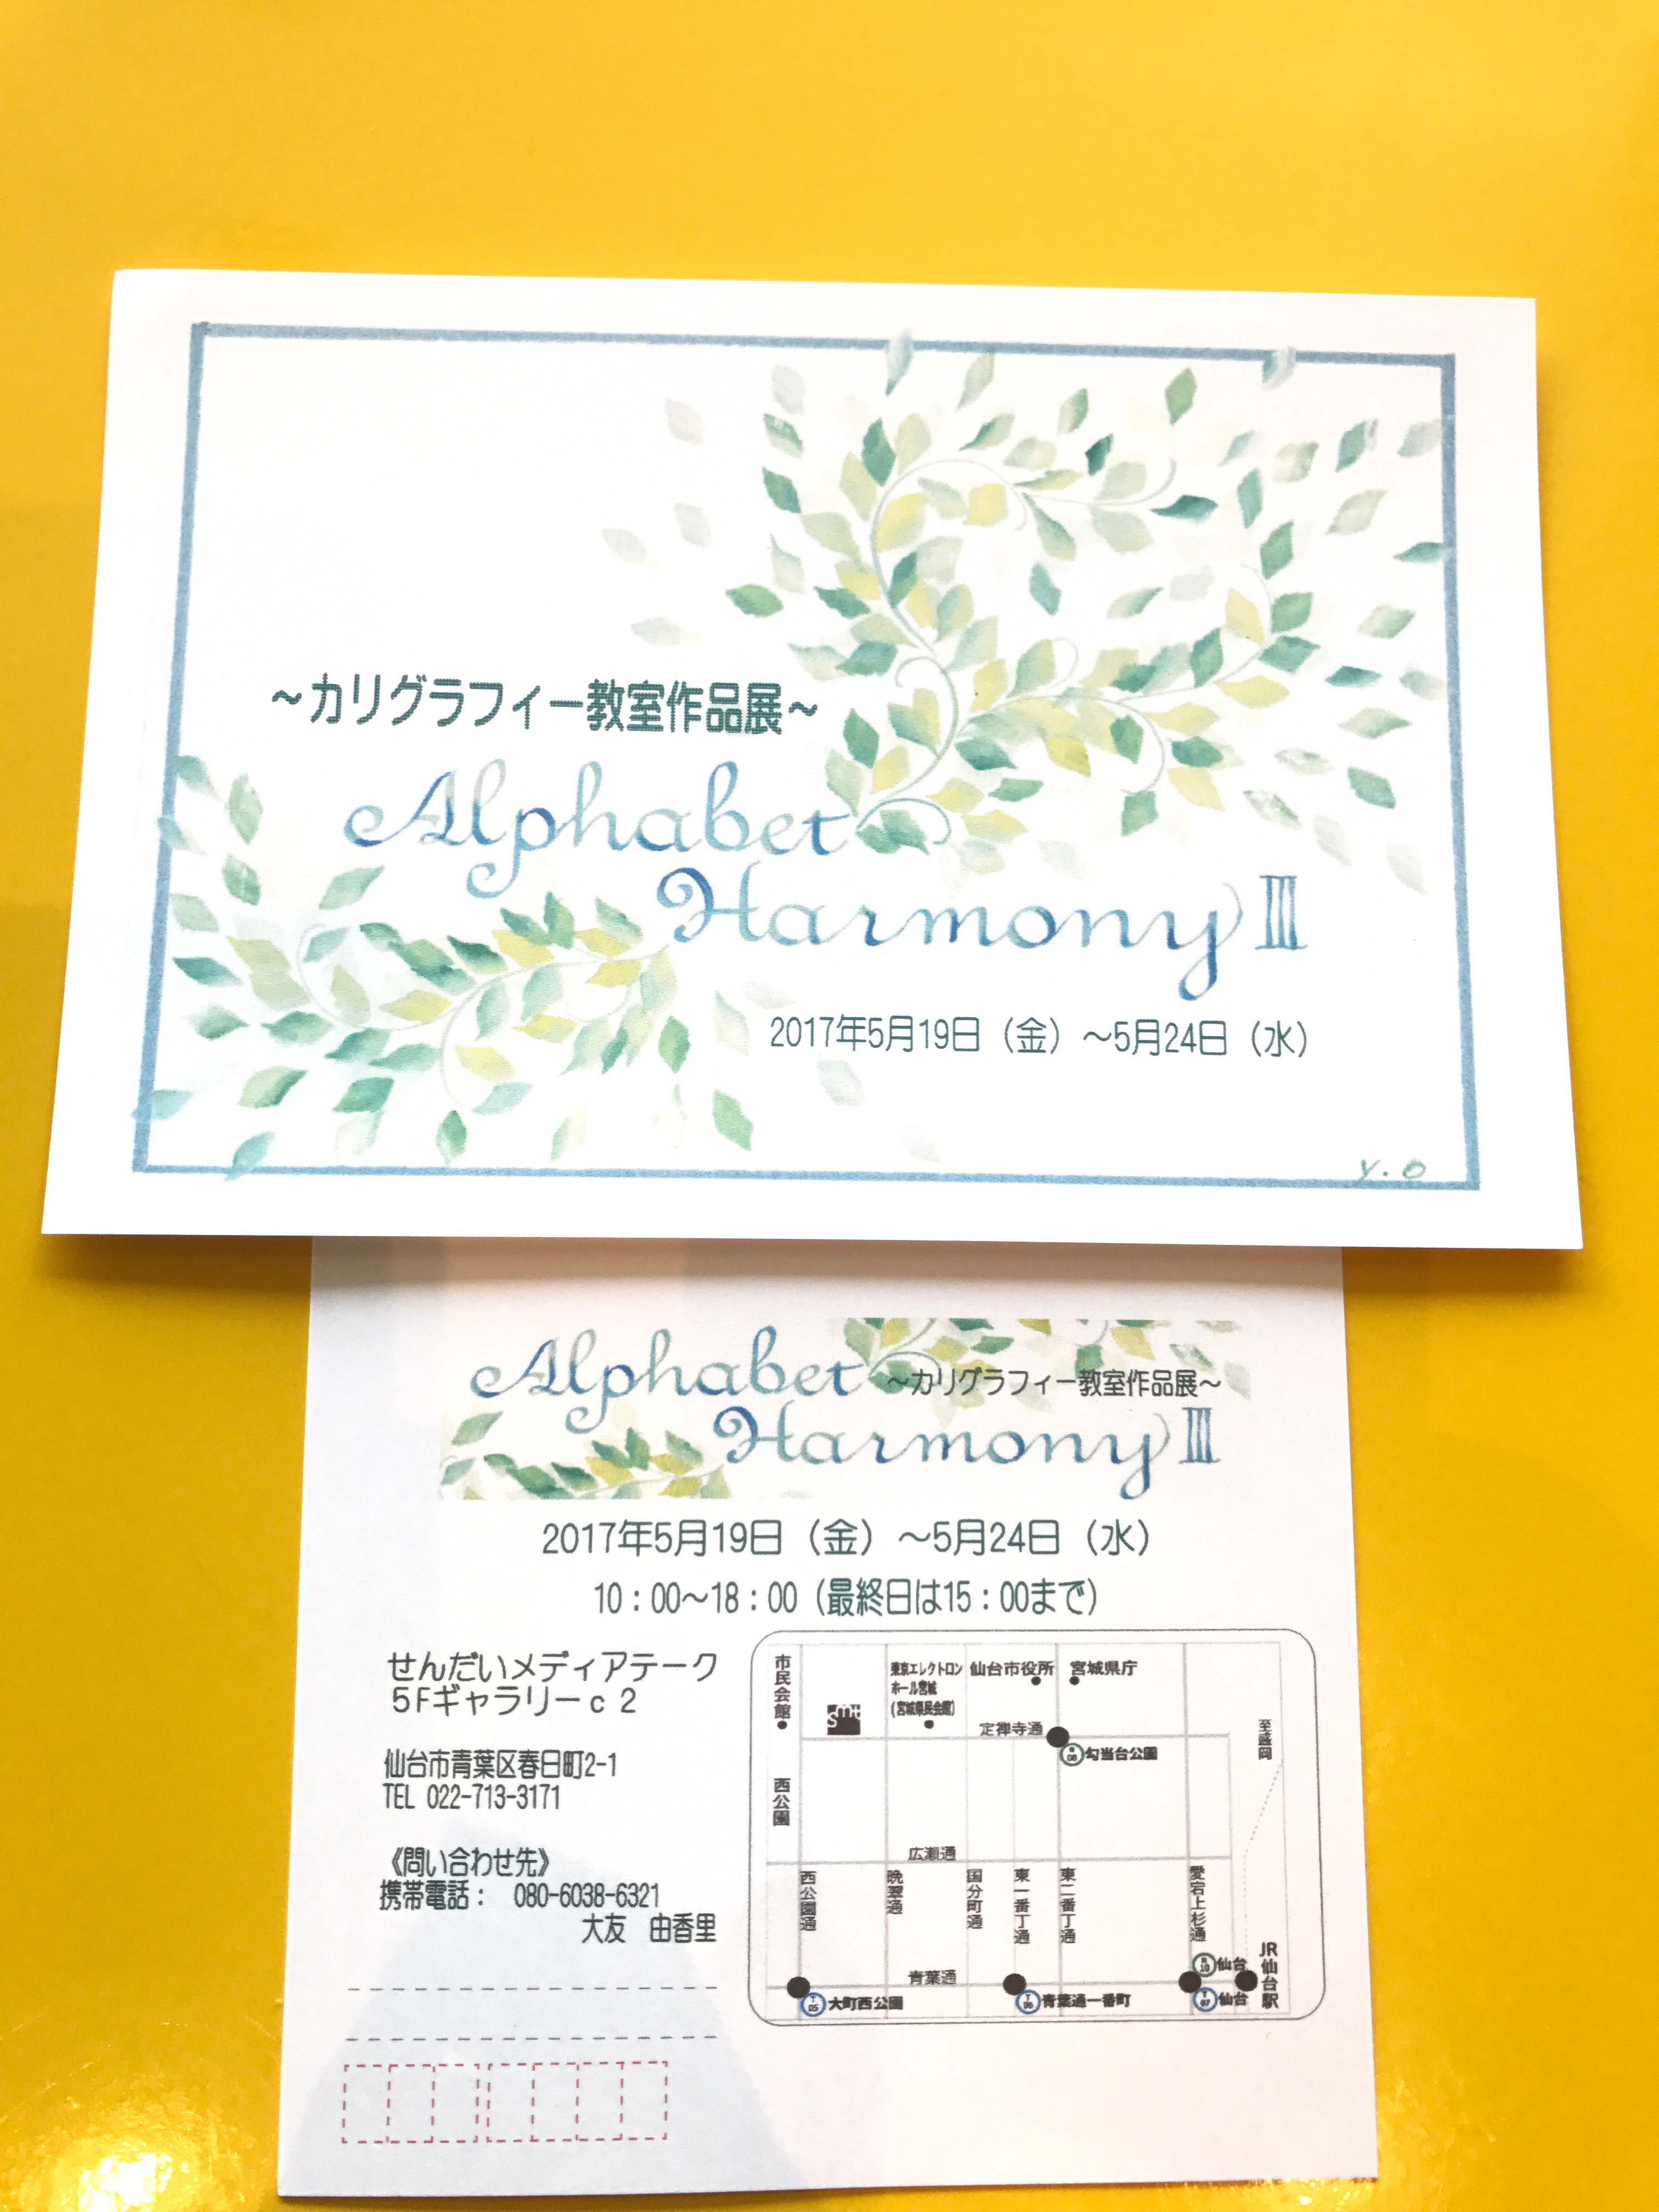 Atelier Copines 花のある暮らし 仙台から カリグラフィー作品展